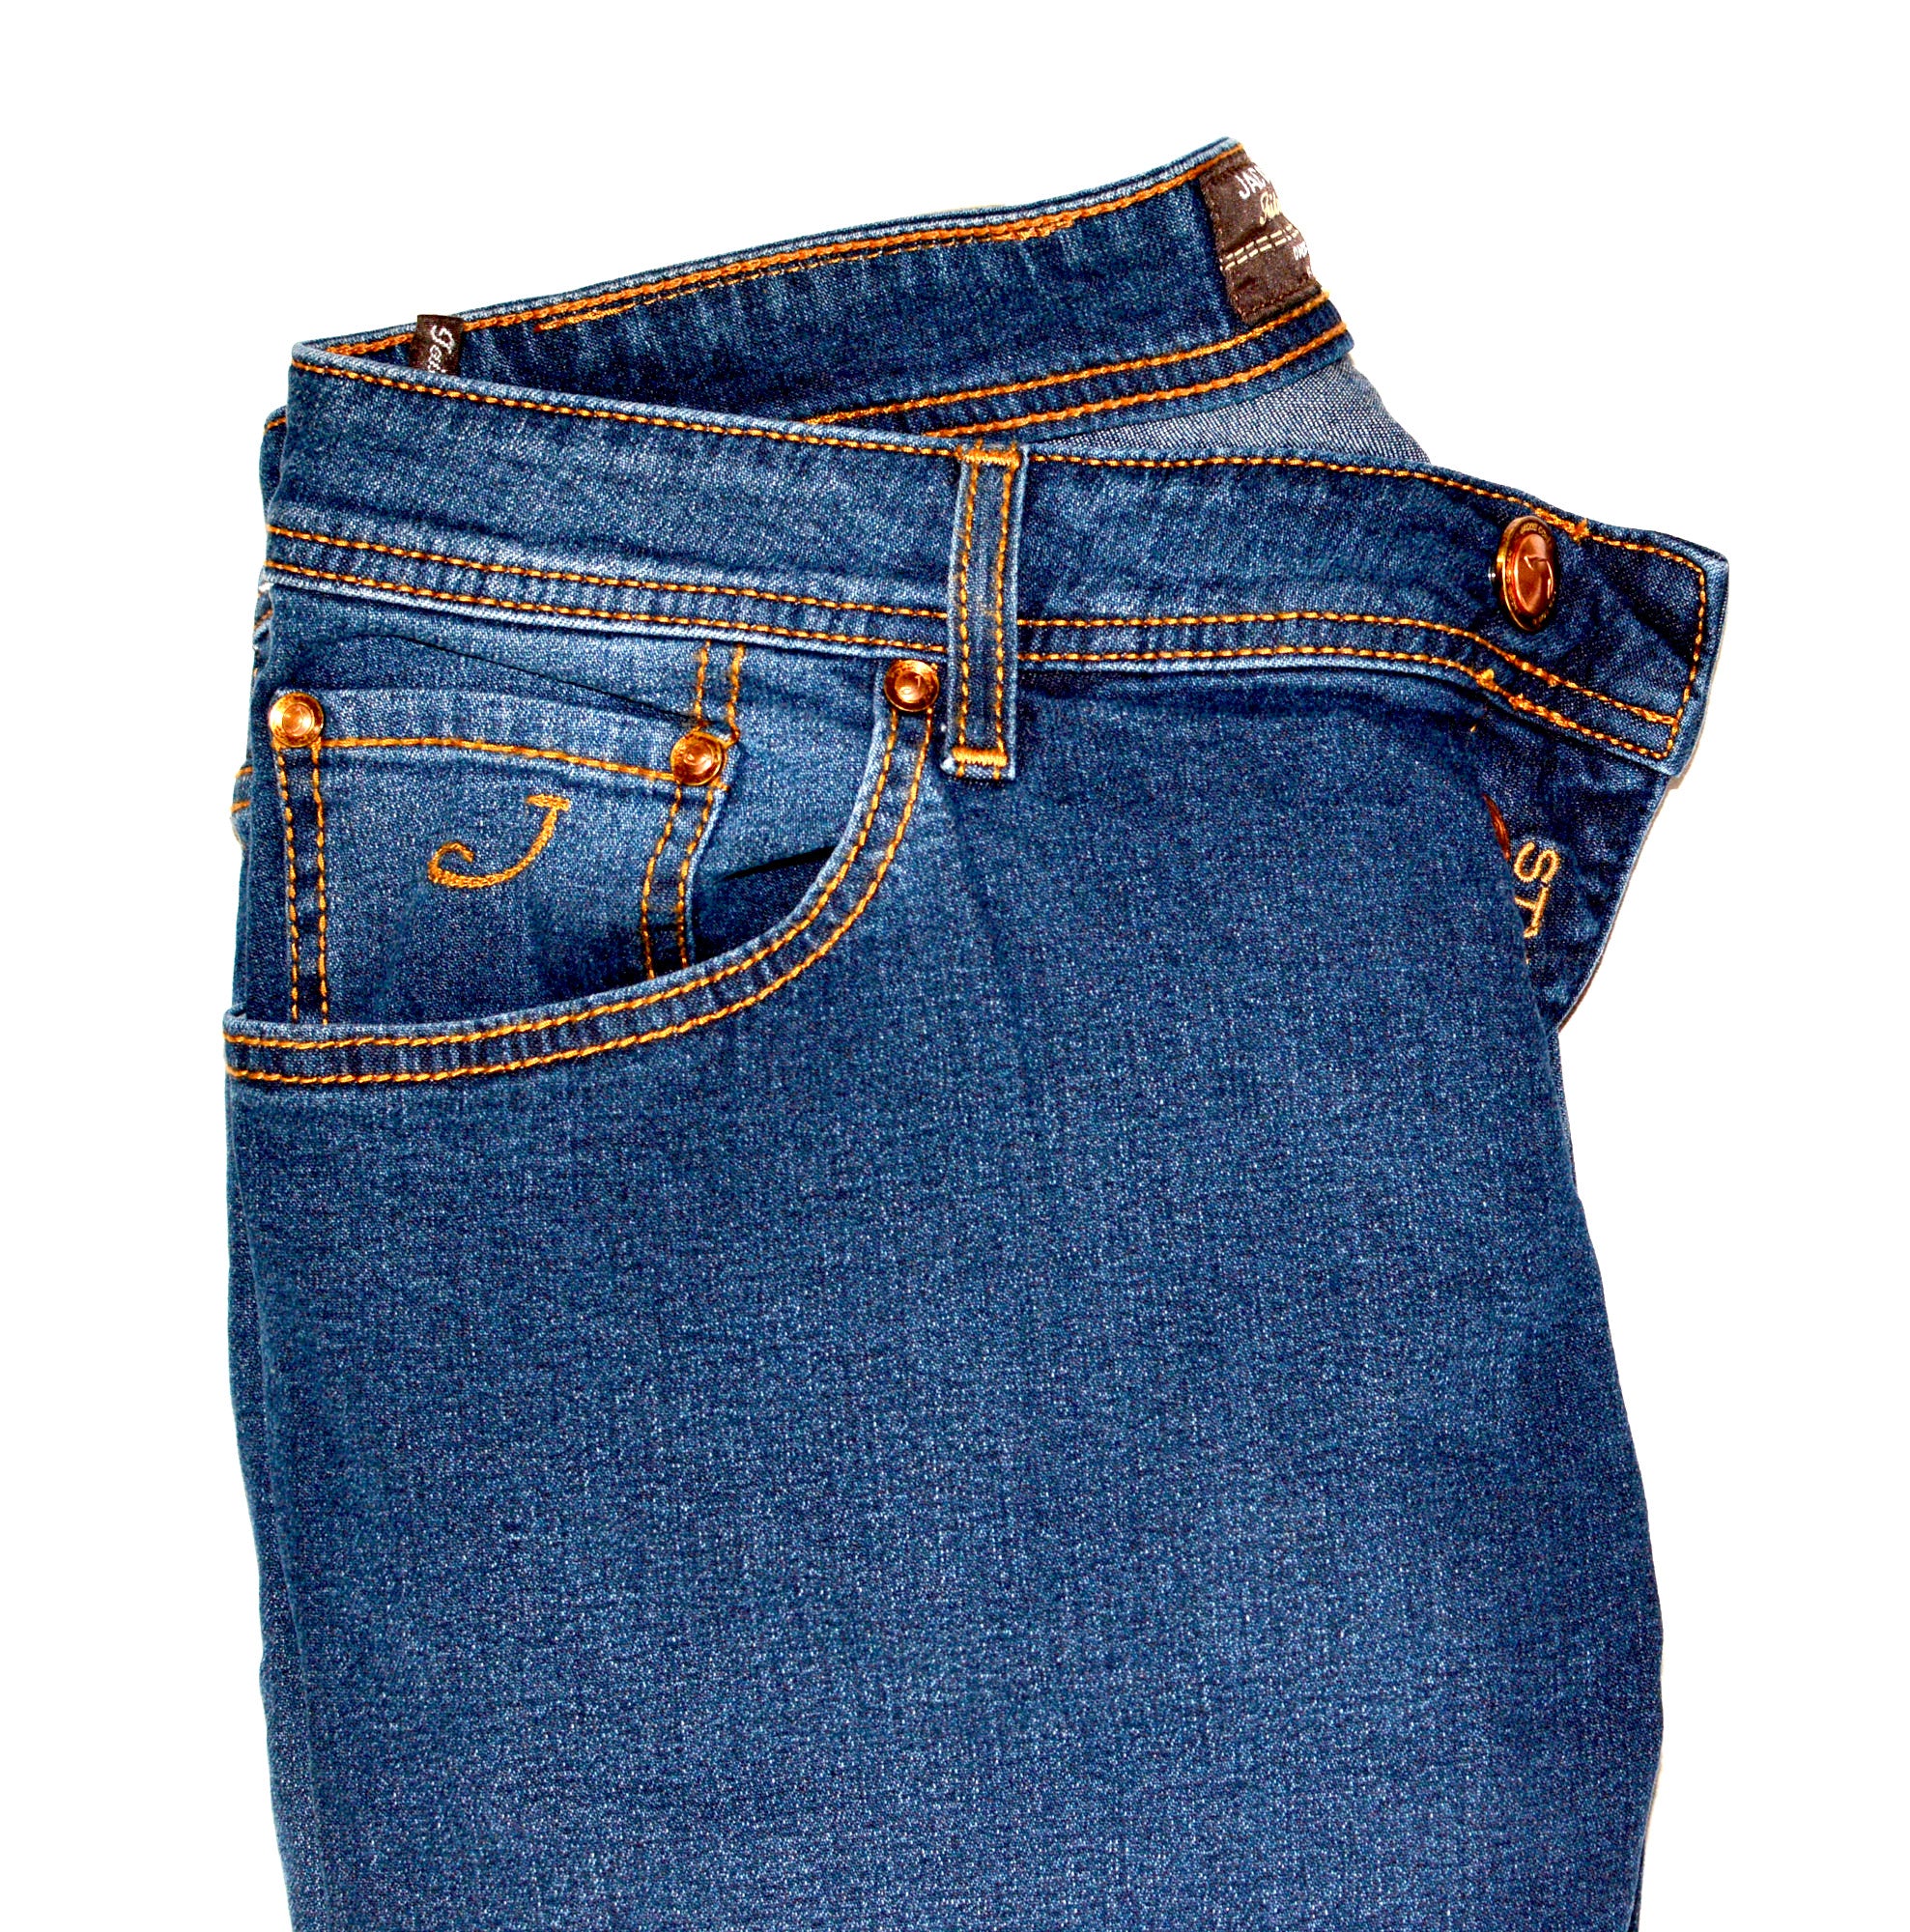 JACOB COHEN J688 Comfort Vintage Blue Cotton Stretch Slim Fit Jeans Pants US 32 JACOB COHEN